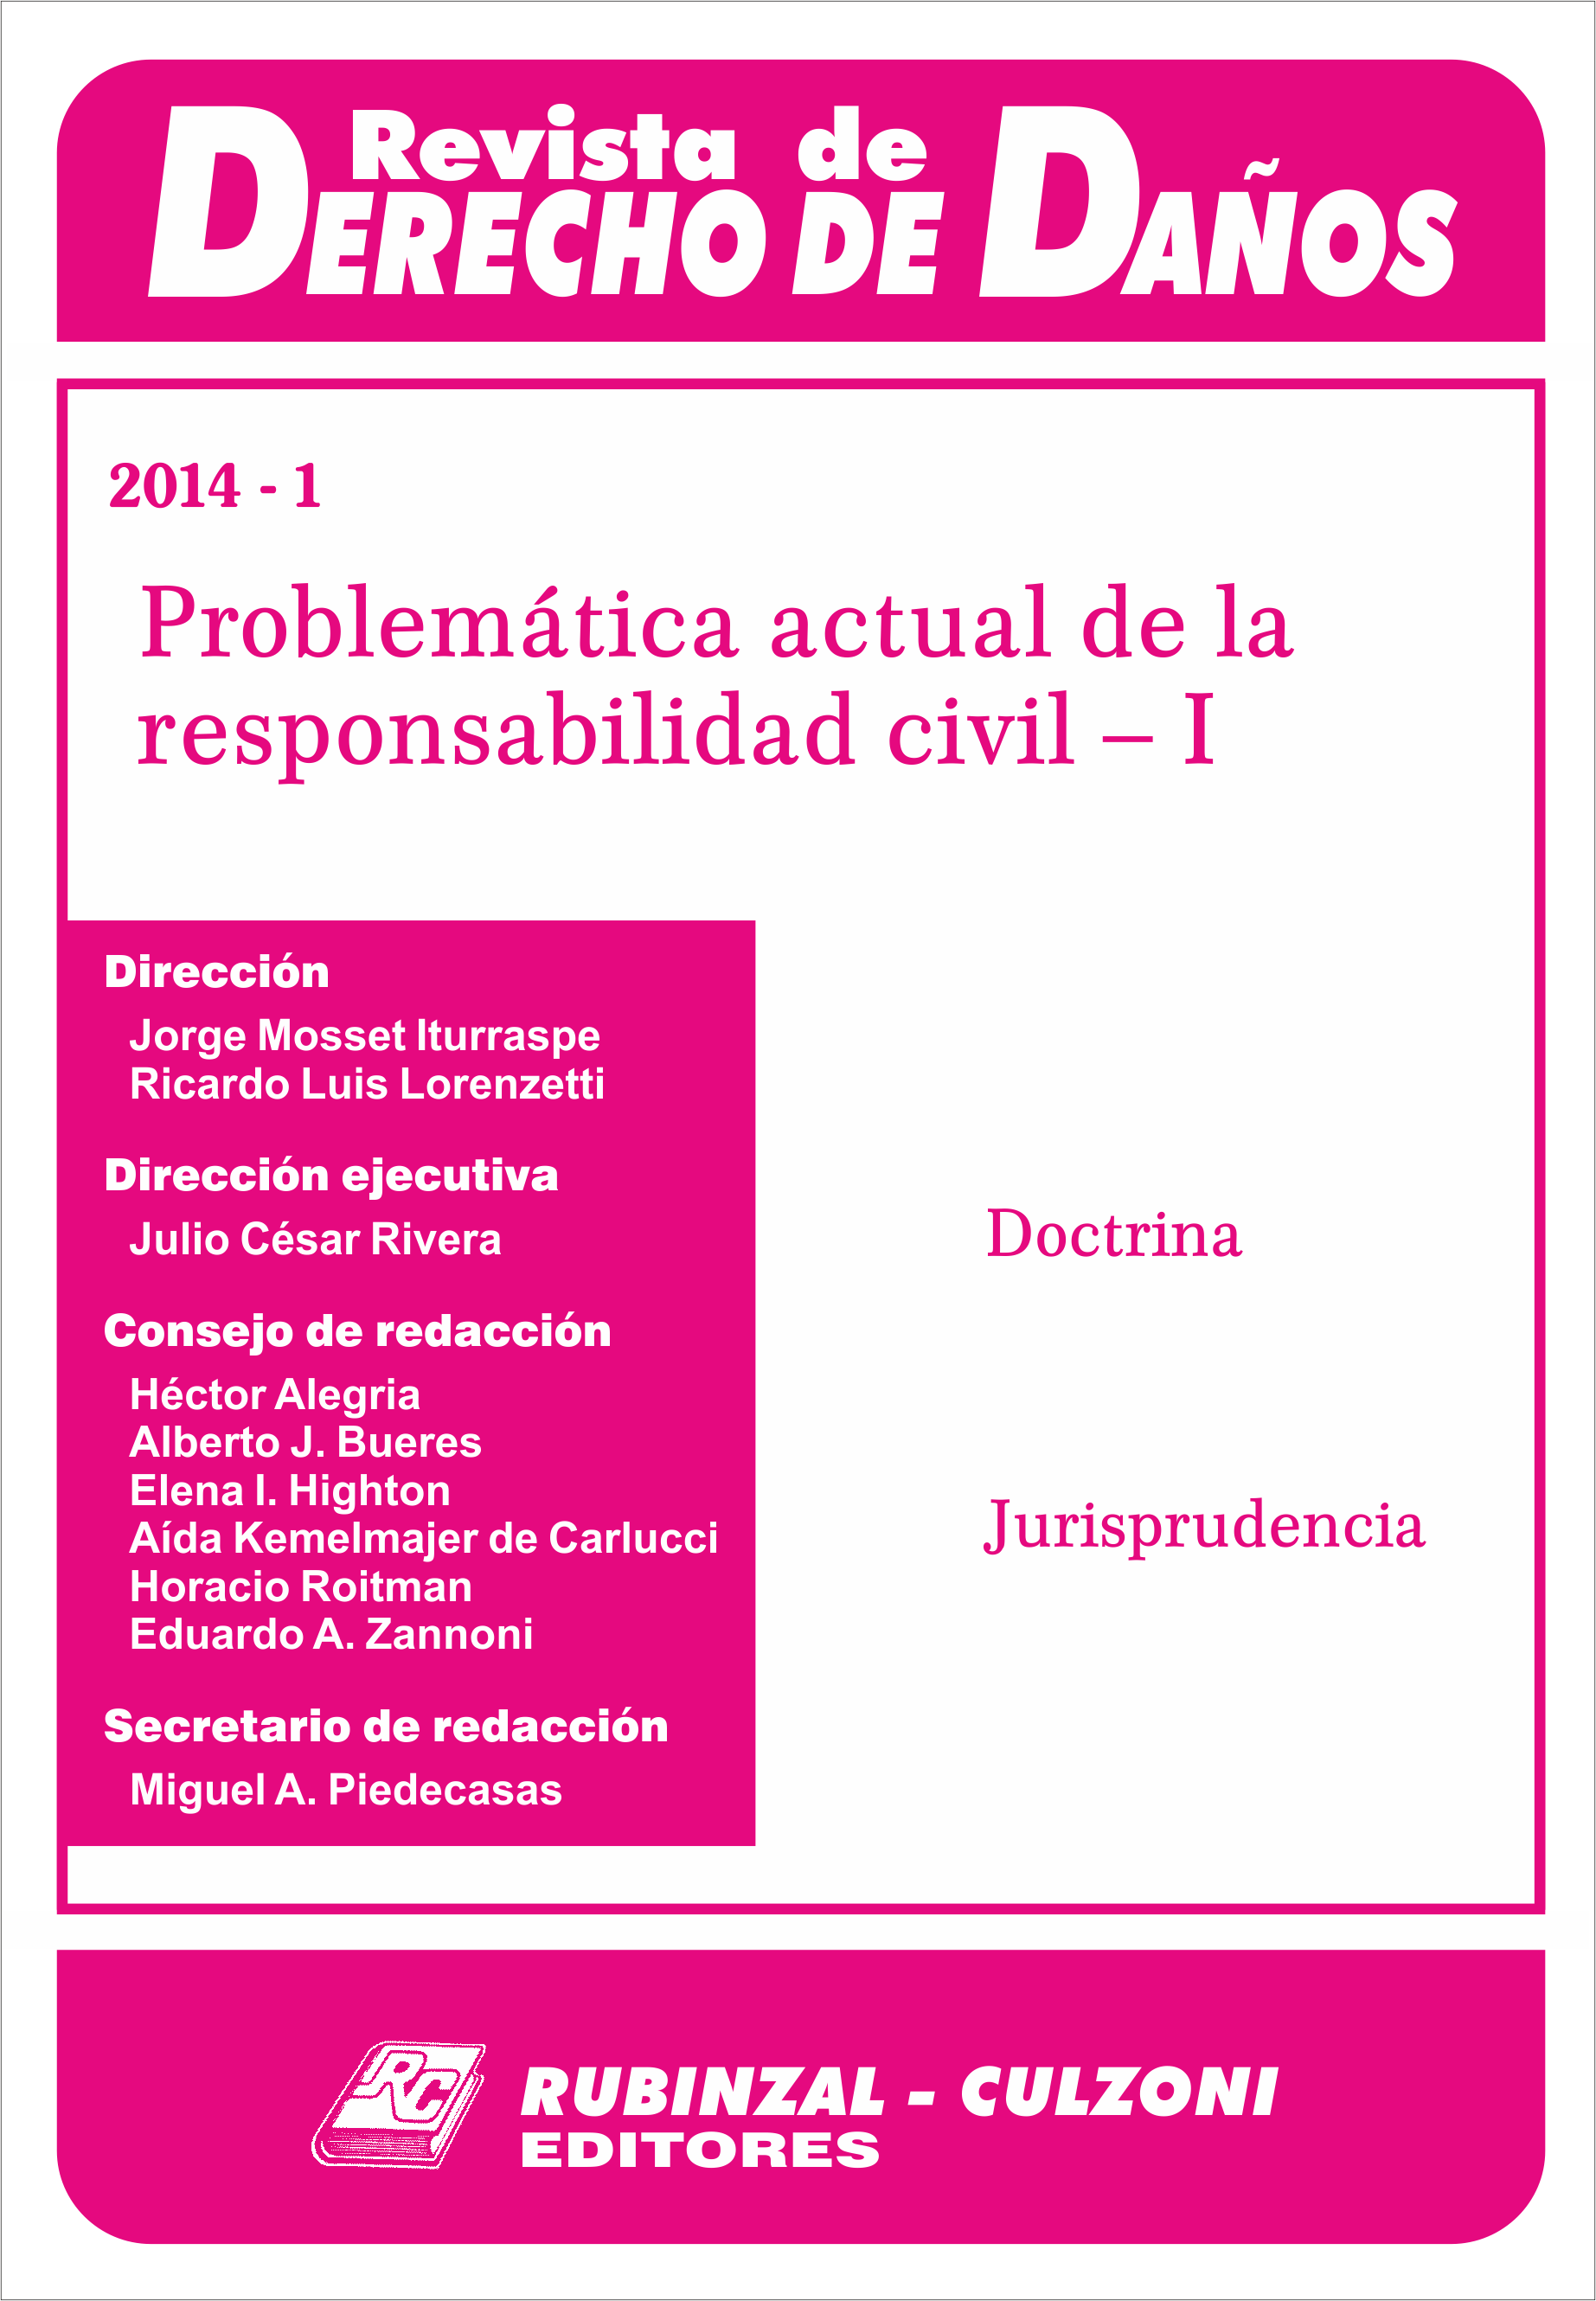 Revista de Derecho de Daños - Problemática actual de la responsabilidad civil - I